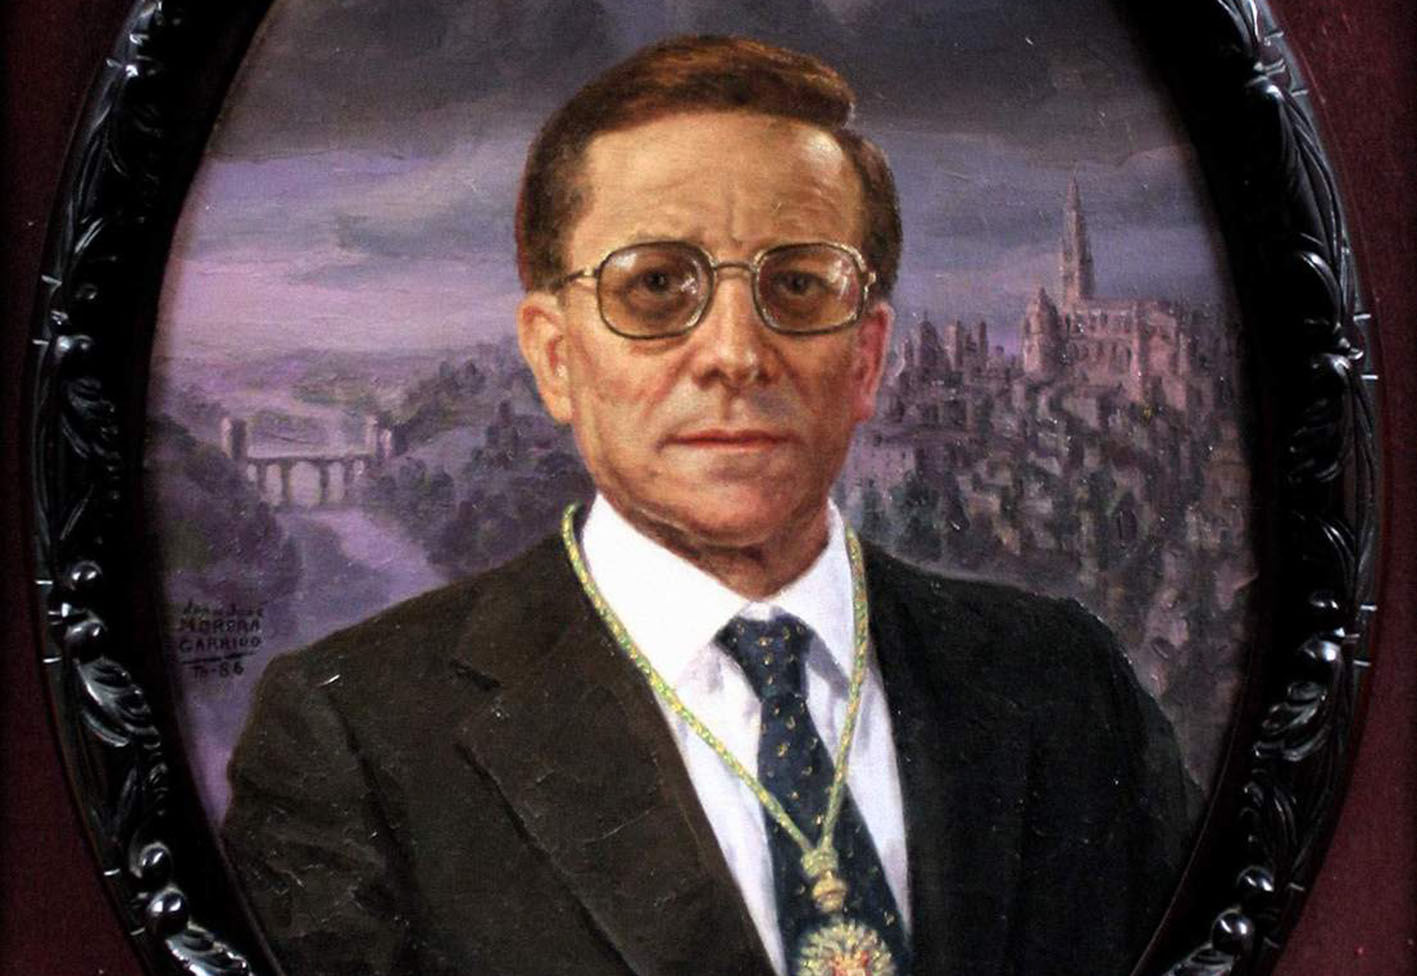 Retrato del doctor San Román que realizó el pintor Juan José Morera Garrido en 1986.